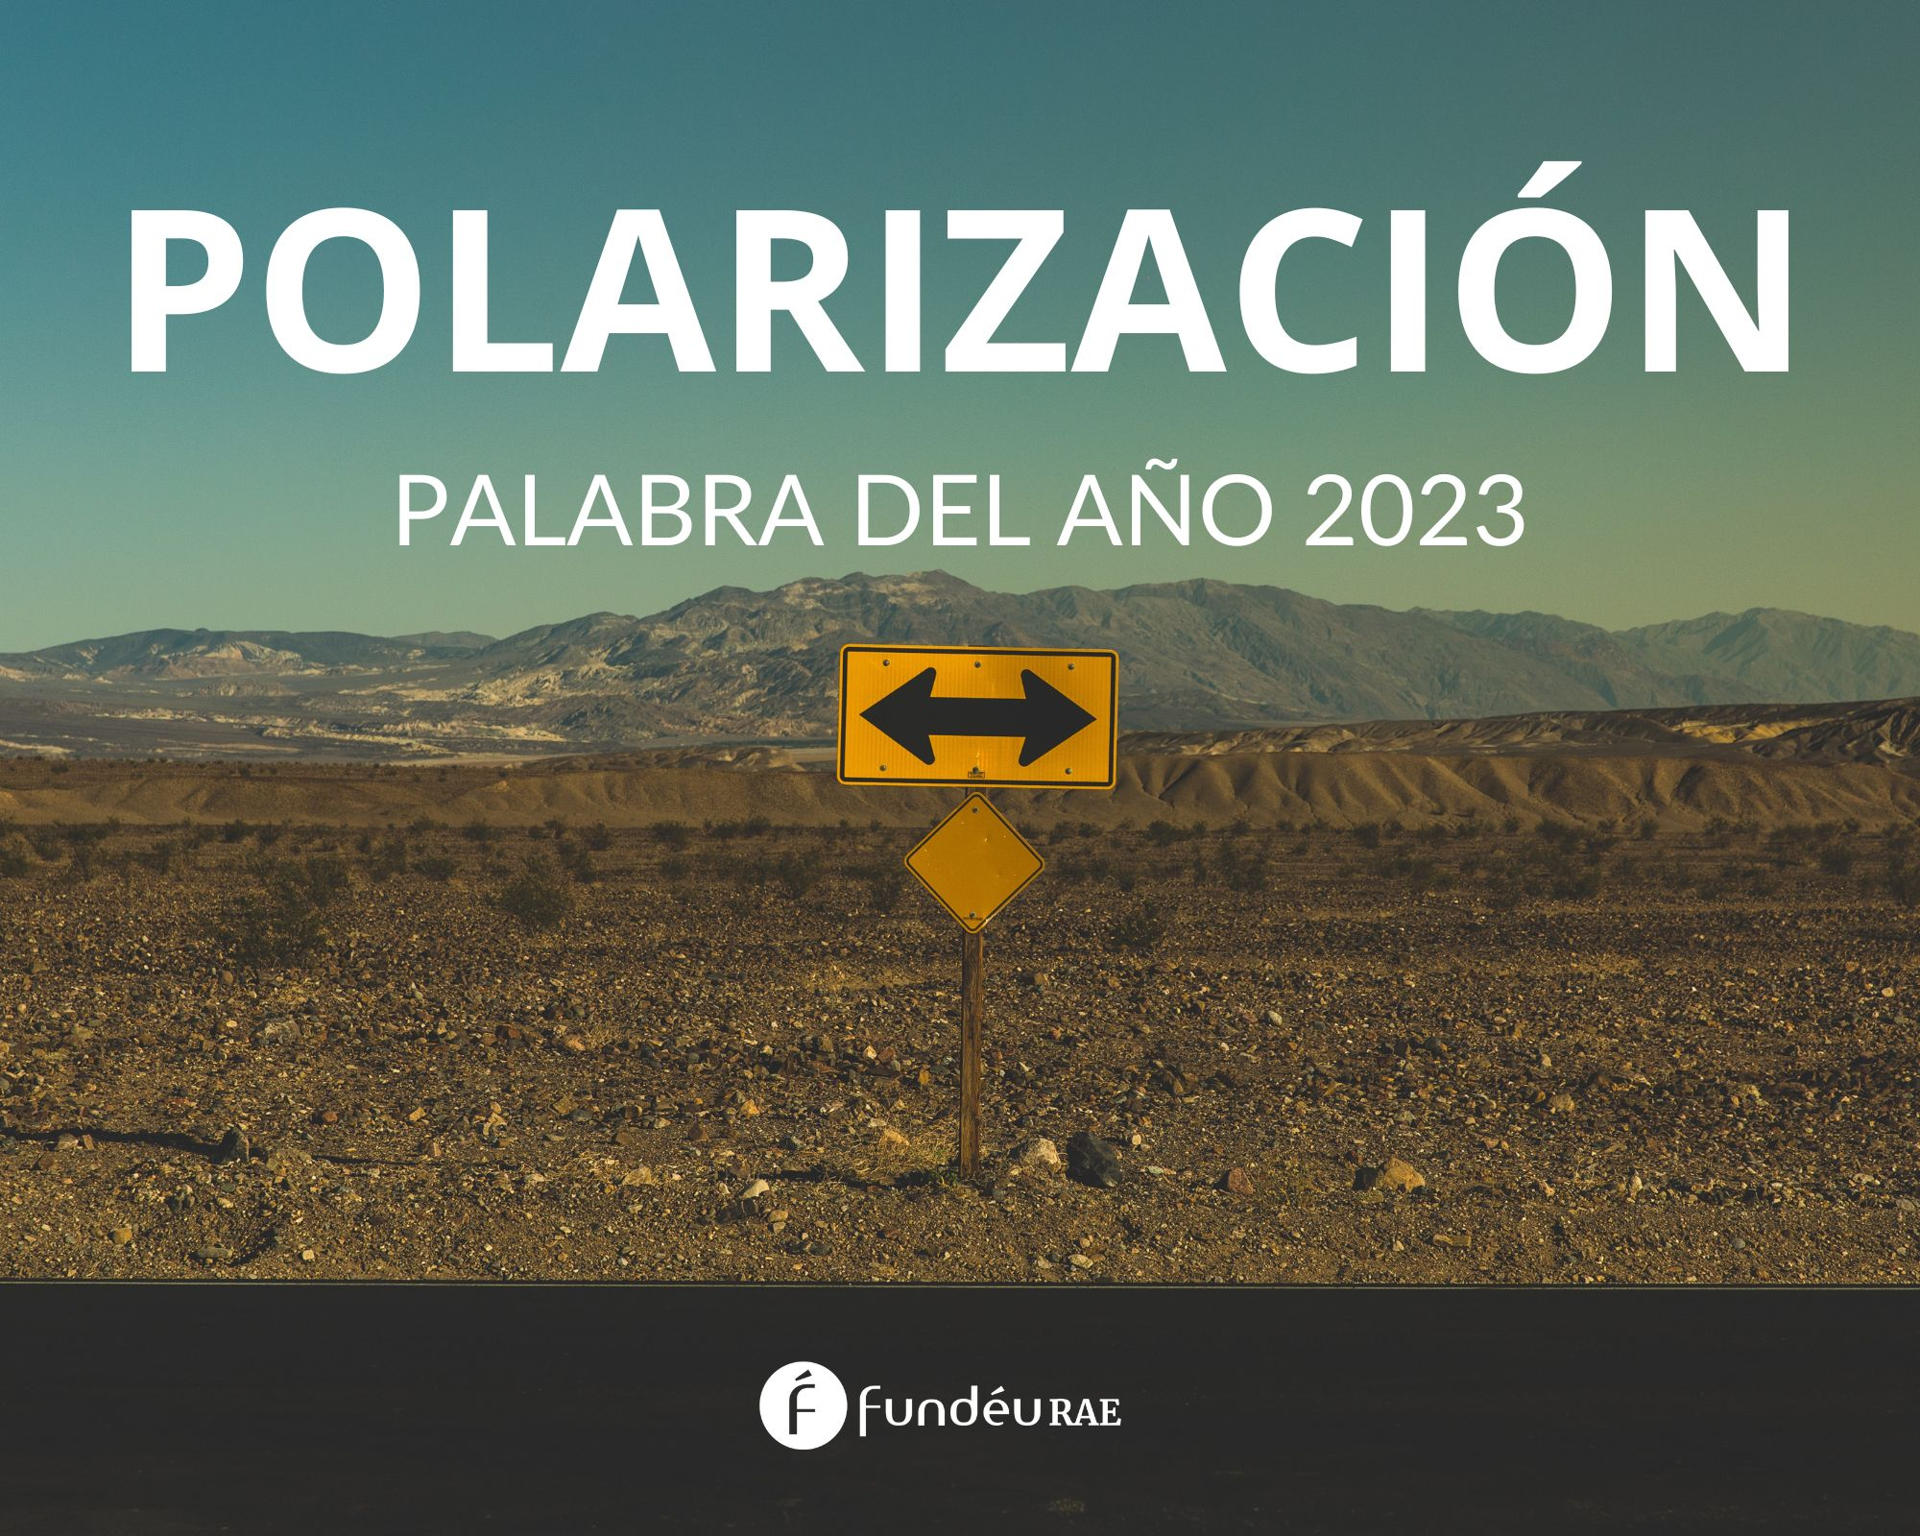 Polarización es la palabra del año 2023 para la FundéuRAE